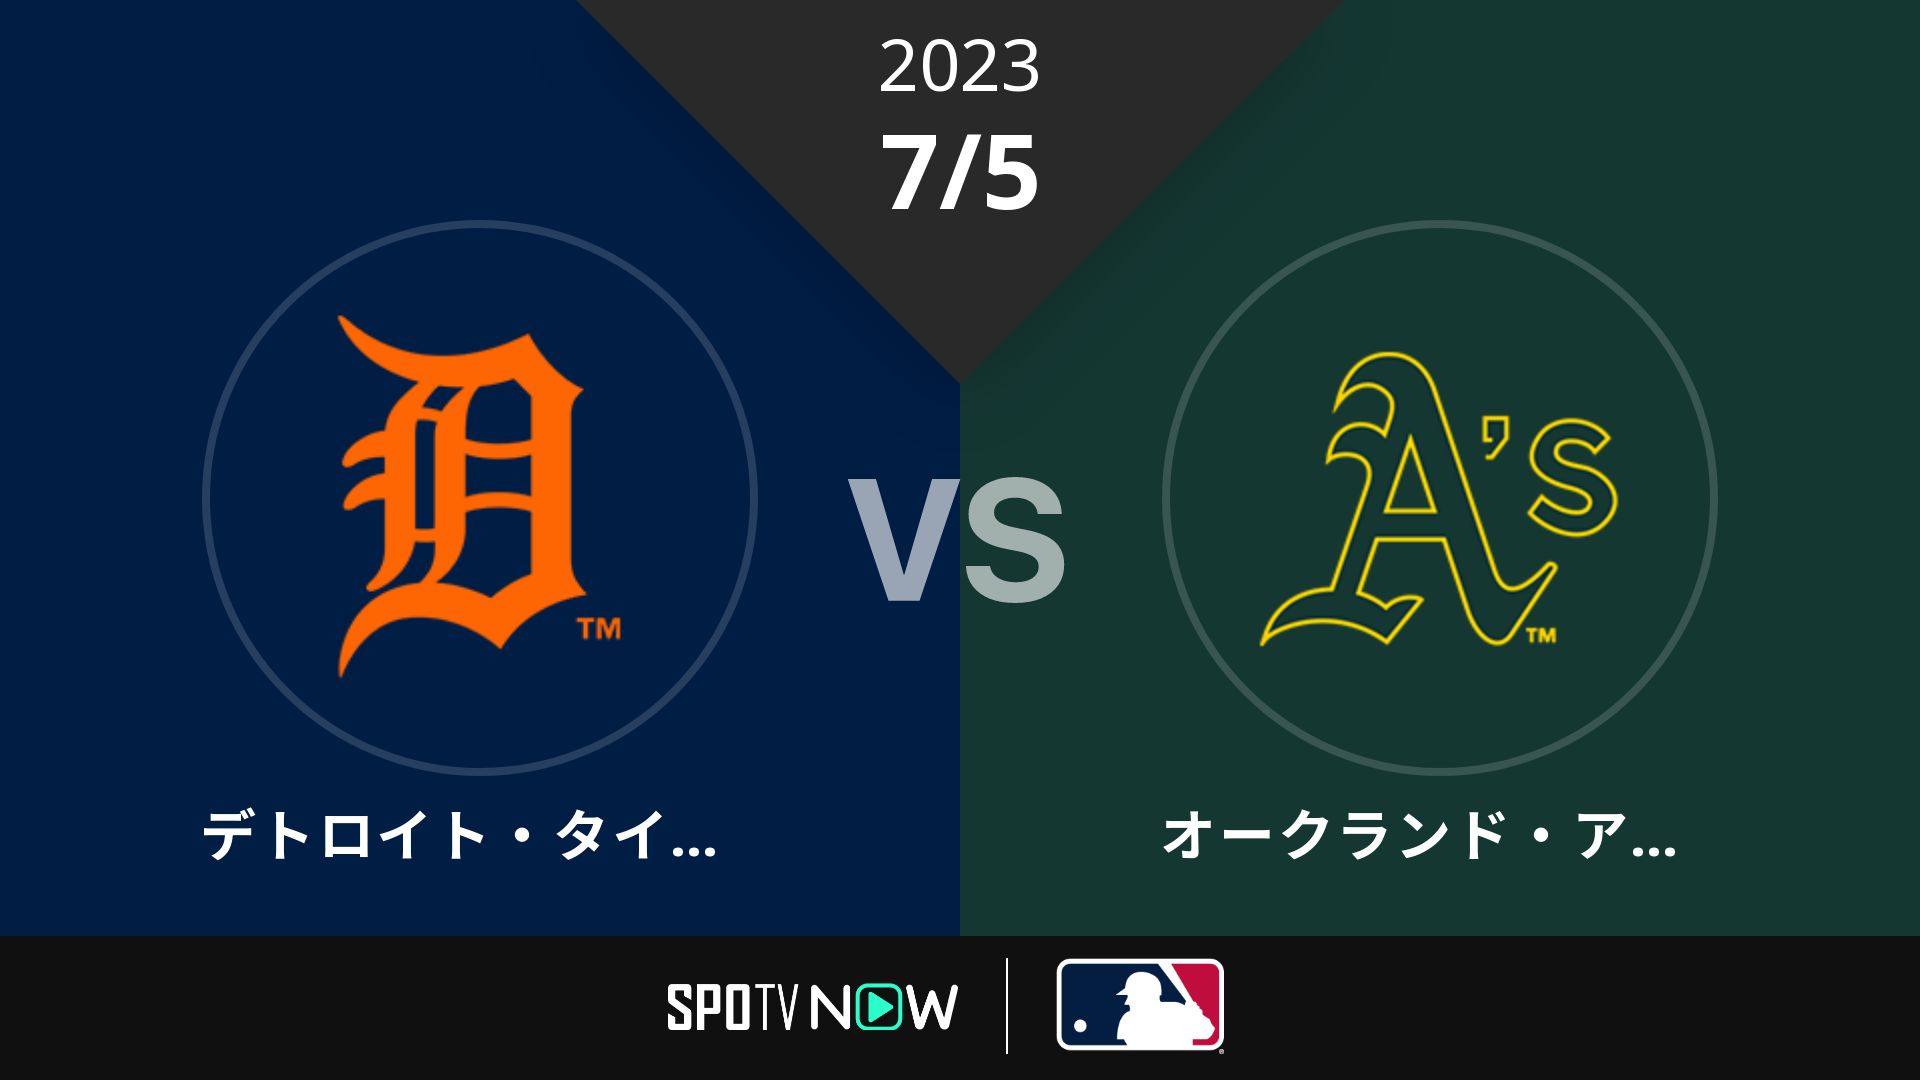 2023/7/5 タイガース vs アスレチックス [MLB]